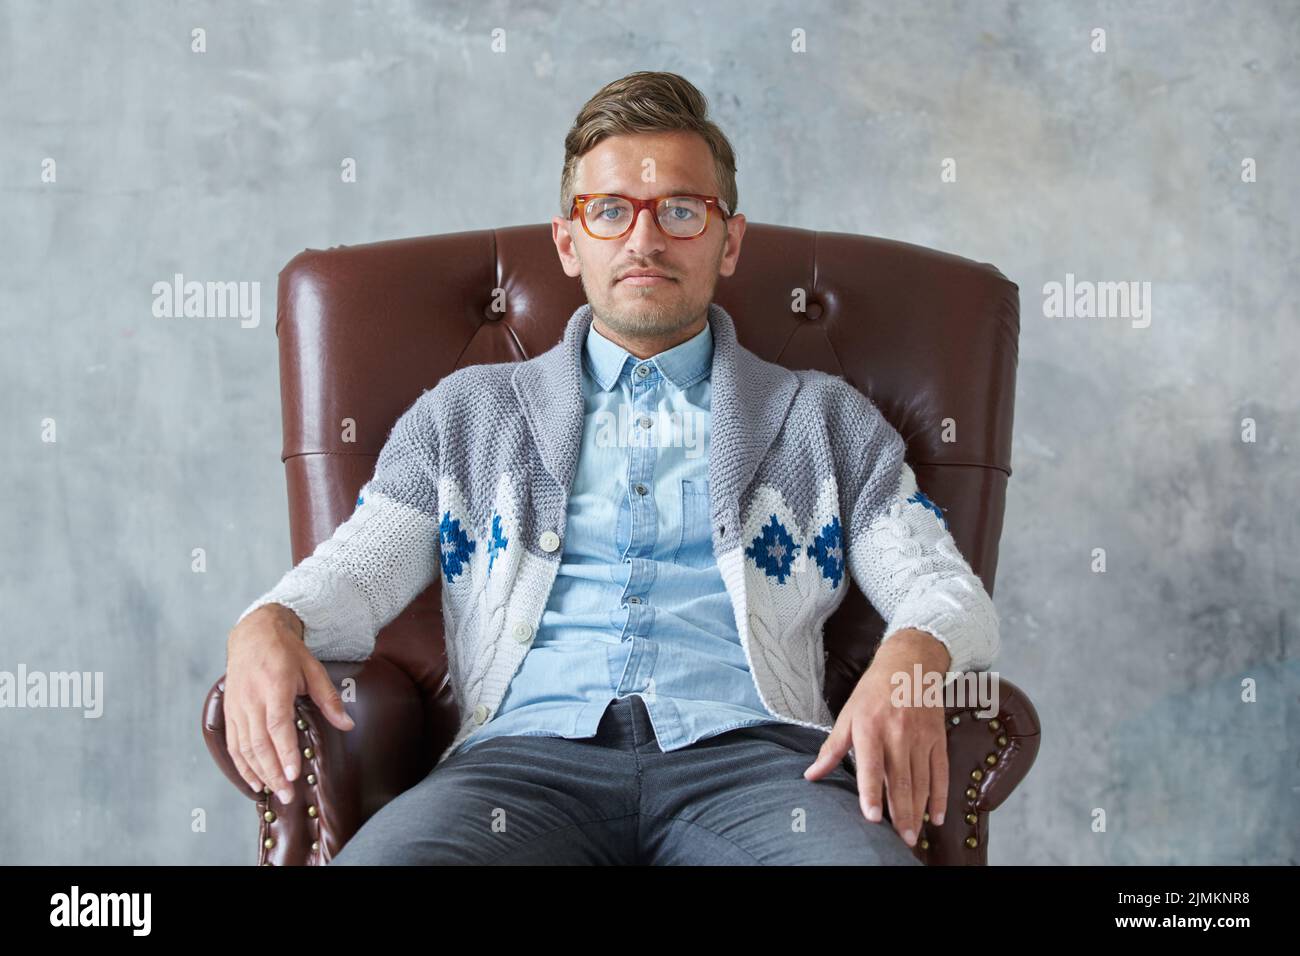 Portrait d'un homme intelligent élégant avec des lunettes fixe dans l'appareil photo, bonne vue, petite, non rasé, charismatique chemise bleue, g Banque D'Images